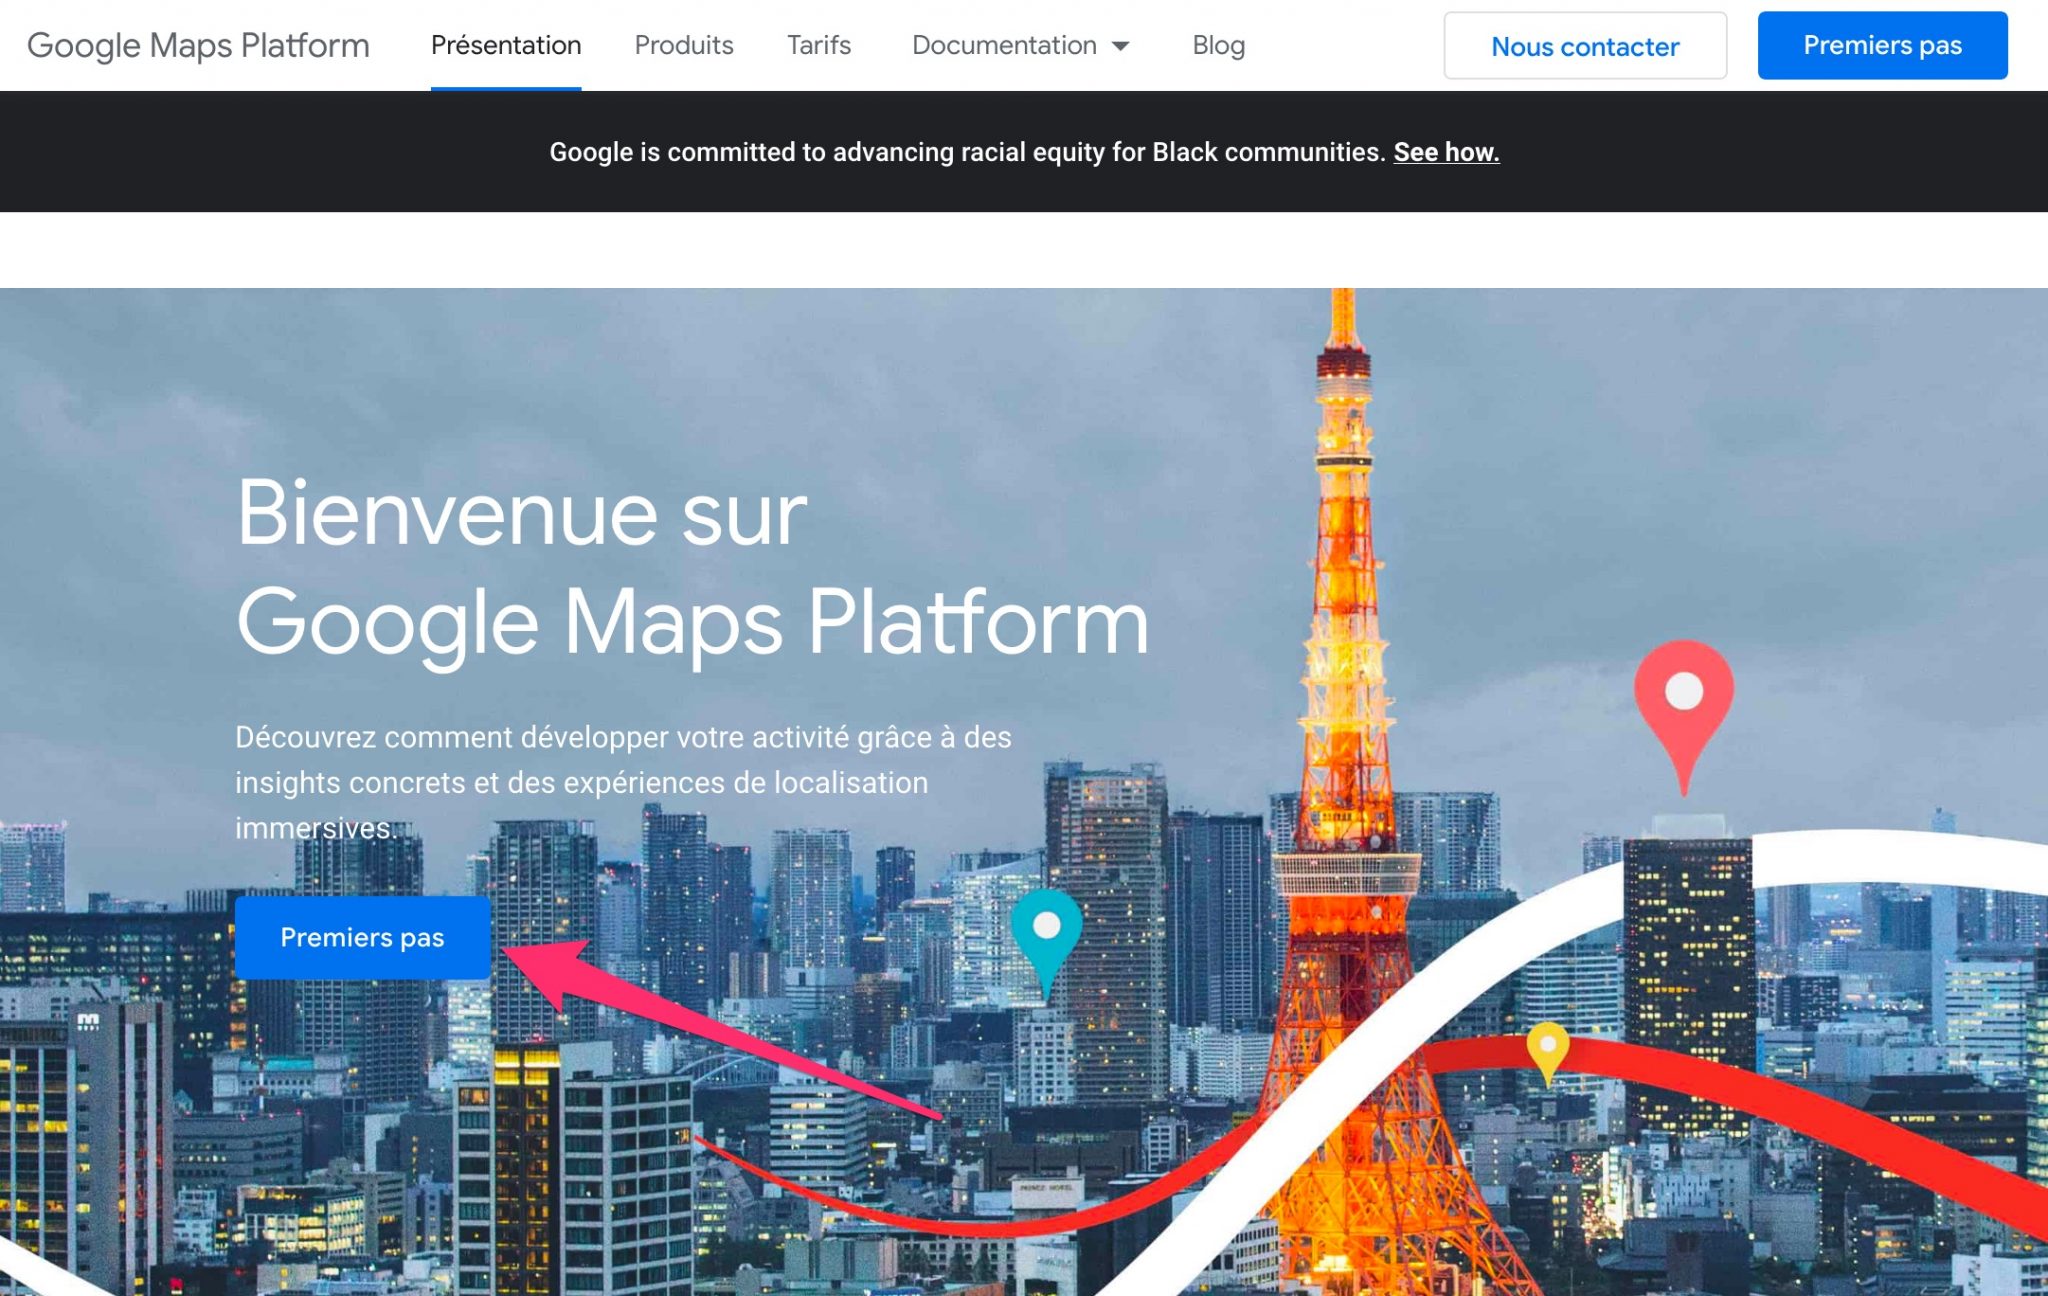 Premiers pas Google Map Platform